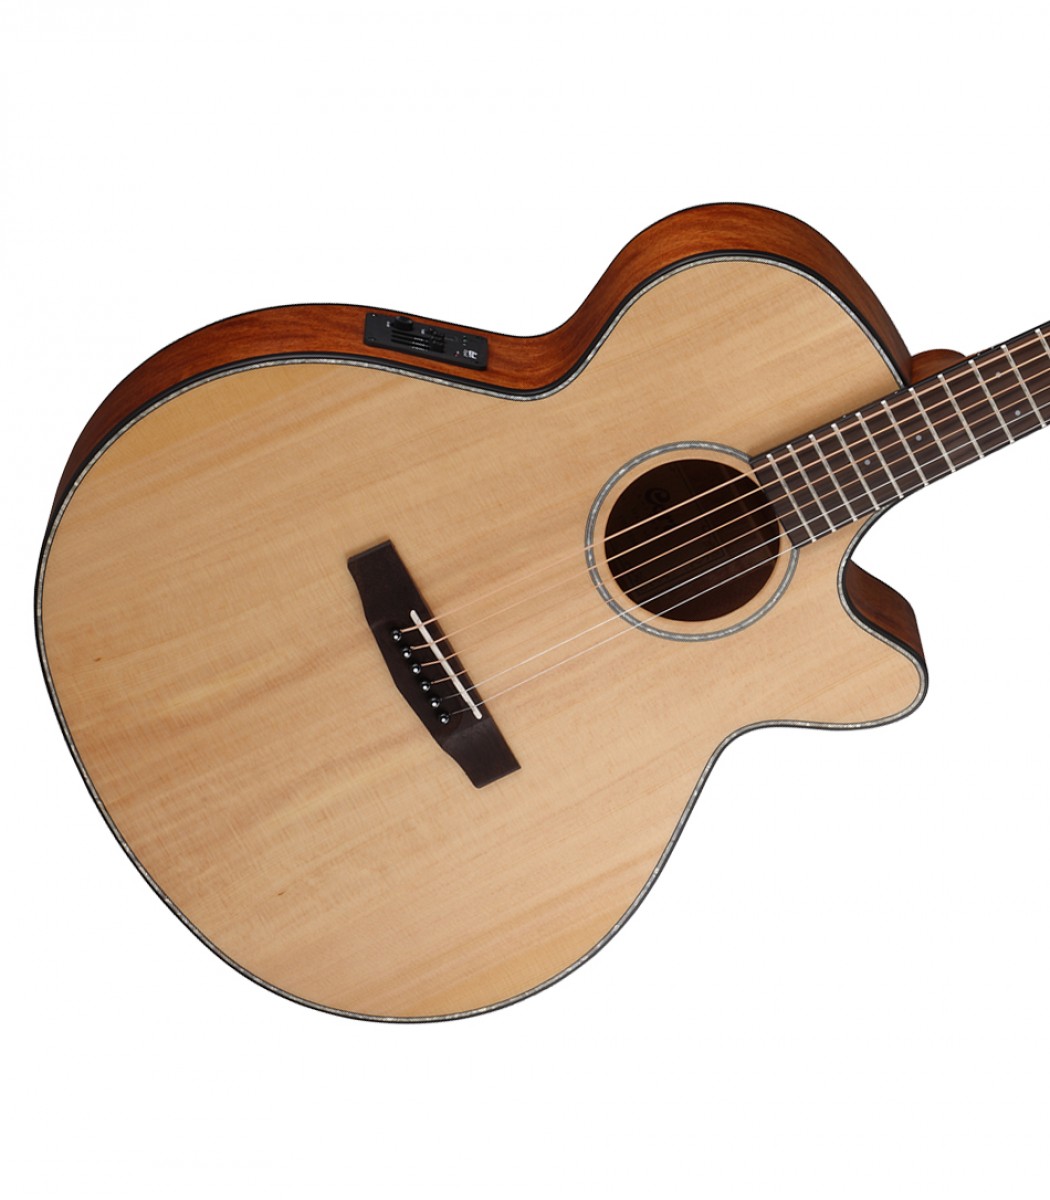 Cort SFX 5 NAT Acoustic Guitar  Acoustic guitar, Cort guitars, Guitar